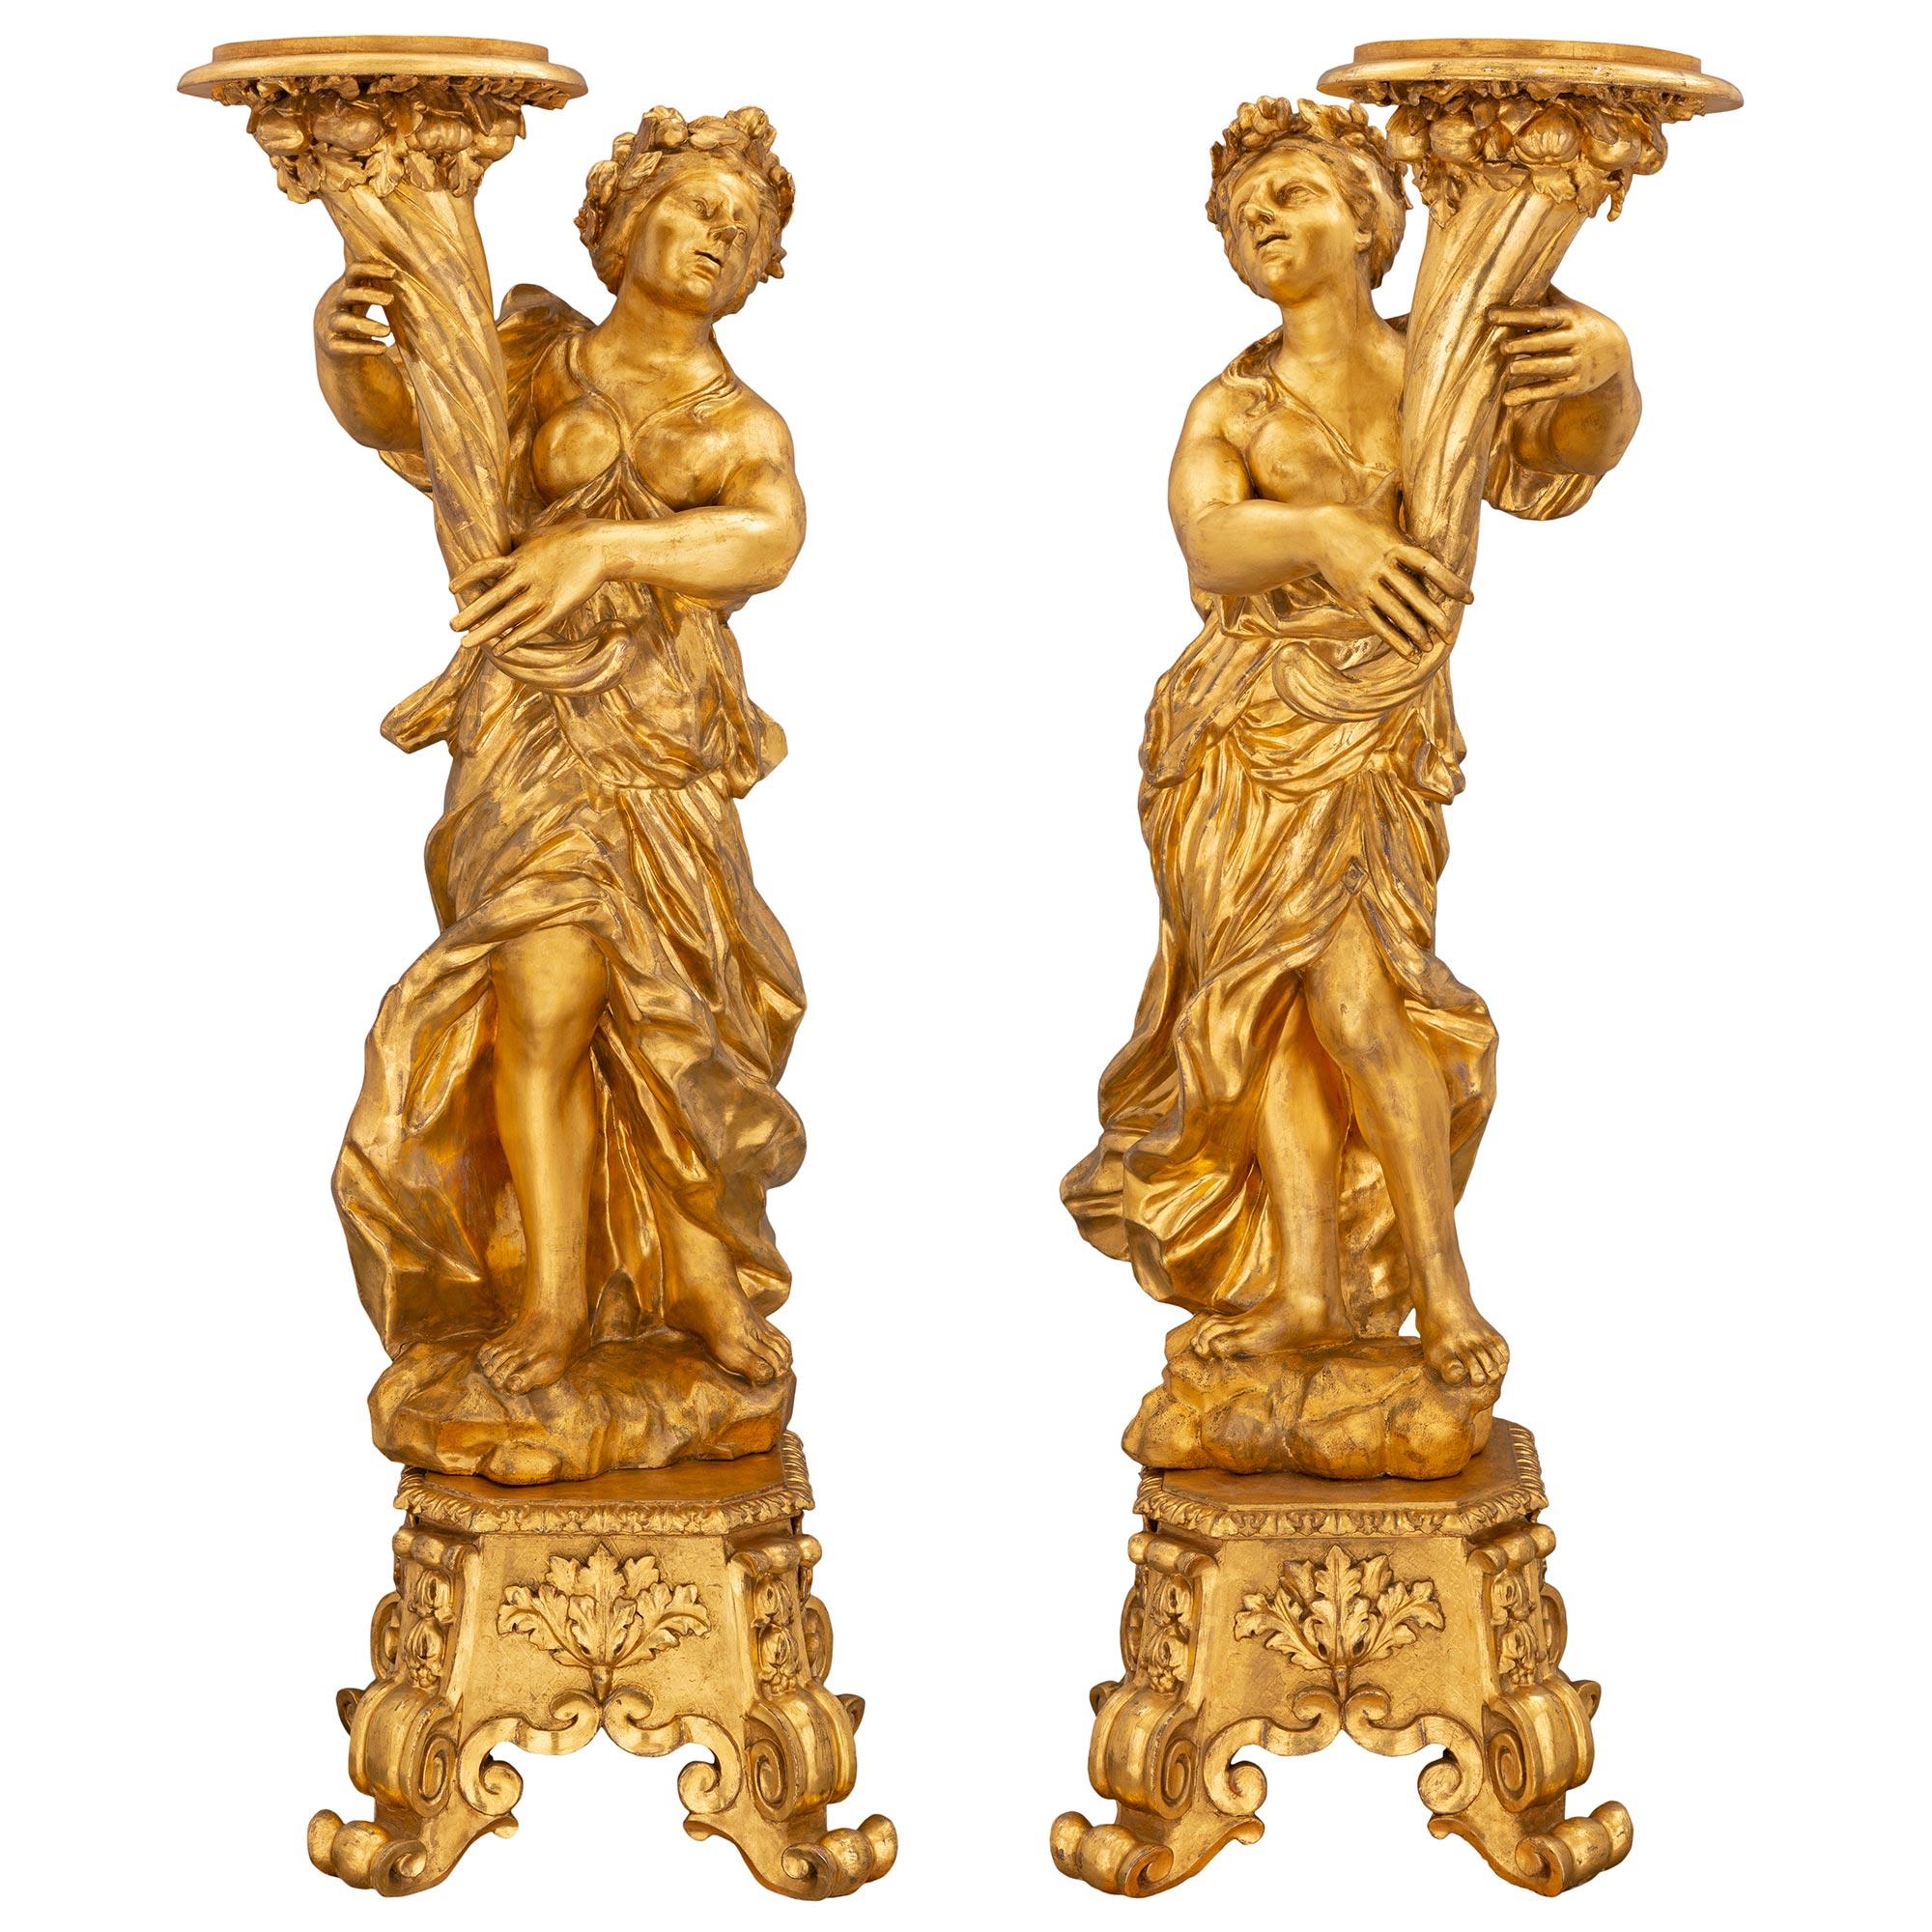 Ein sensationelles und monumentales Paar italienischer Torchières aus vergoldetem Holz aus dem späten 17. Jede Torchière steht auf einem quadratischen, sich verjüngenden Sockel mit auffallend dekorativen, gerollten Füßen und eleganten Schnitzereien